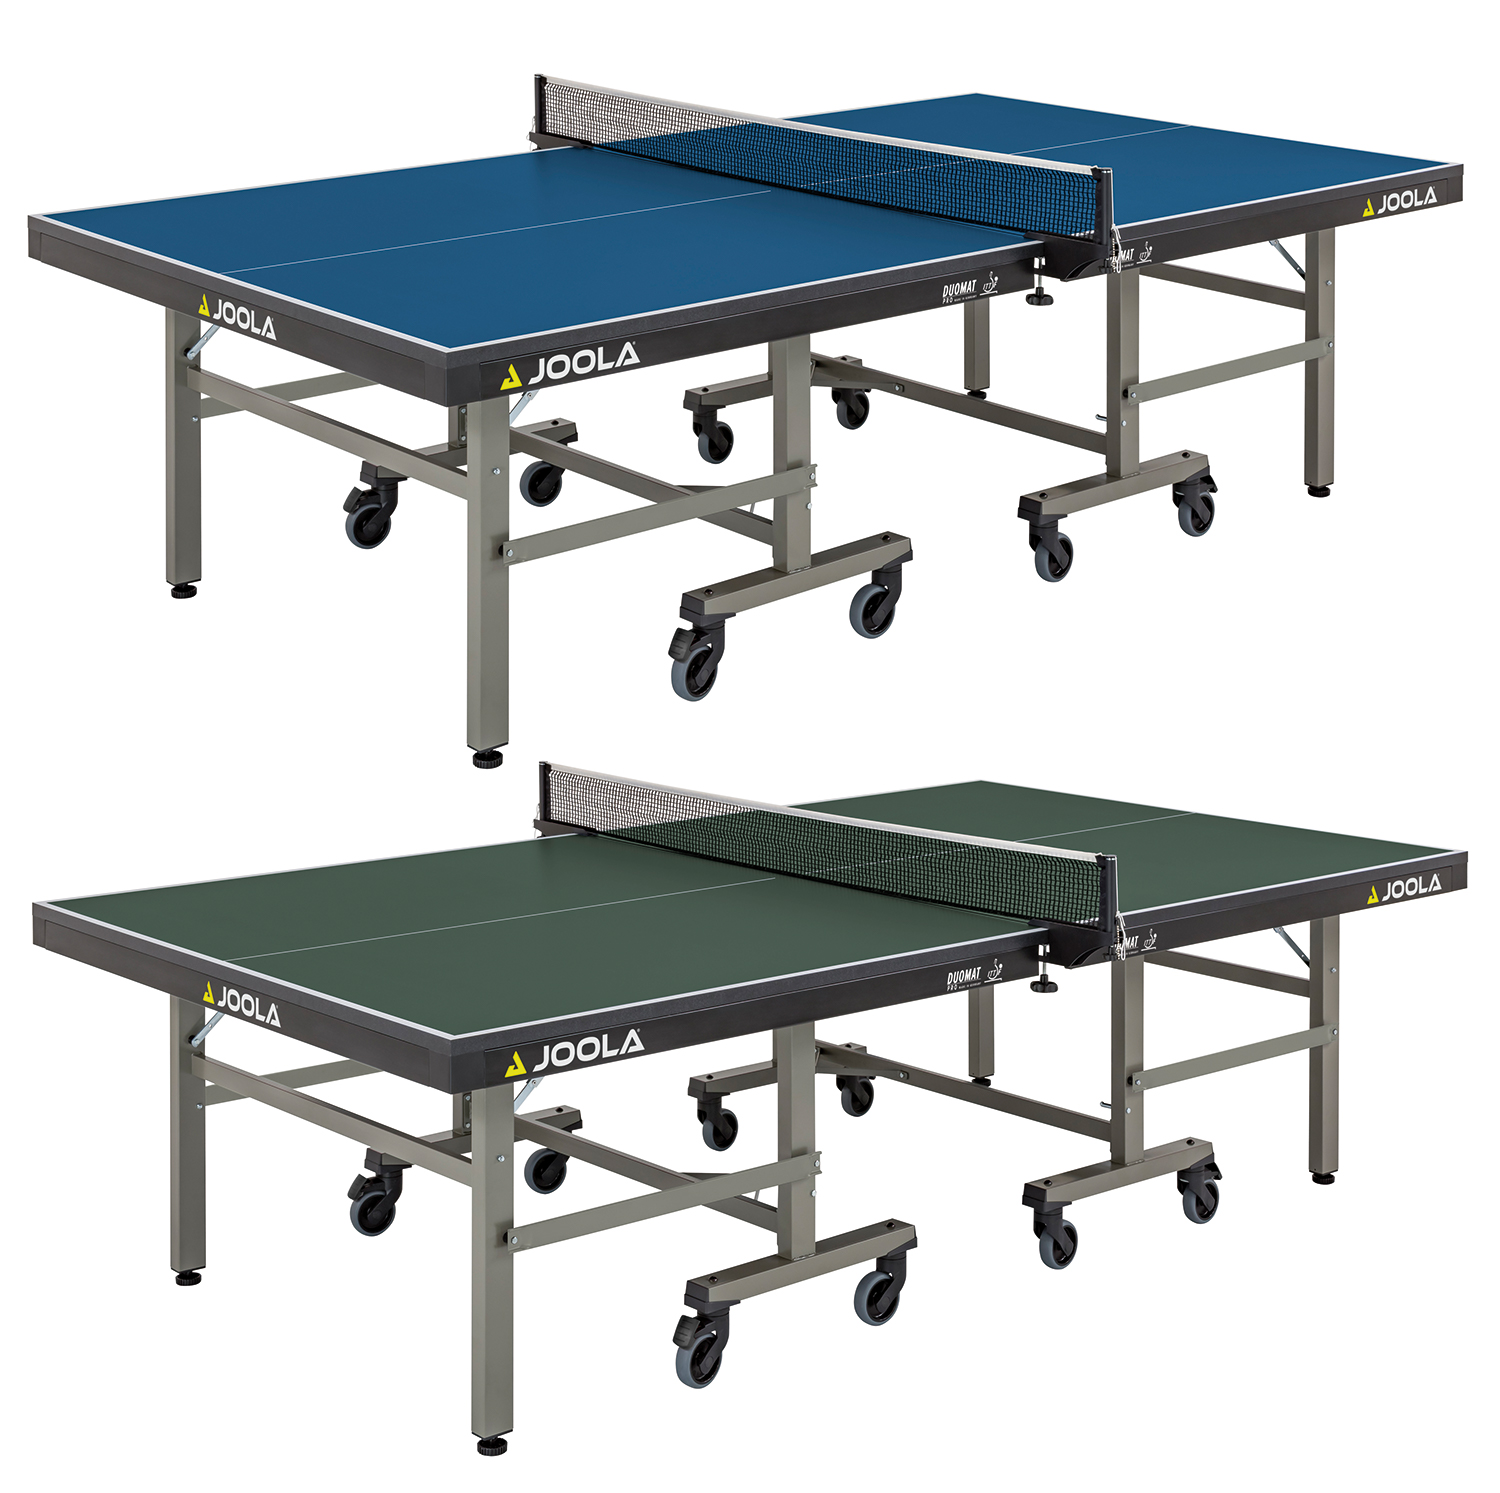 Профессиональный теннисный стол. Теннисный стол Donic. Joola стол. Теннисный стол для слепых. Механизм складывания теннисного стола.